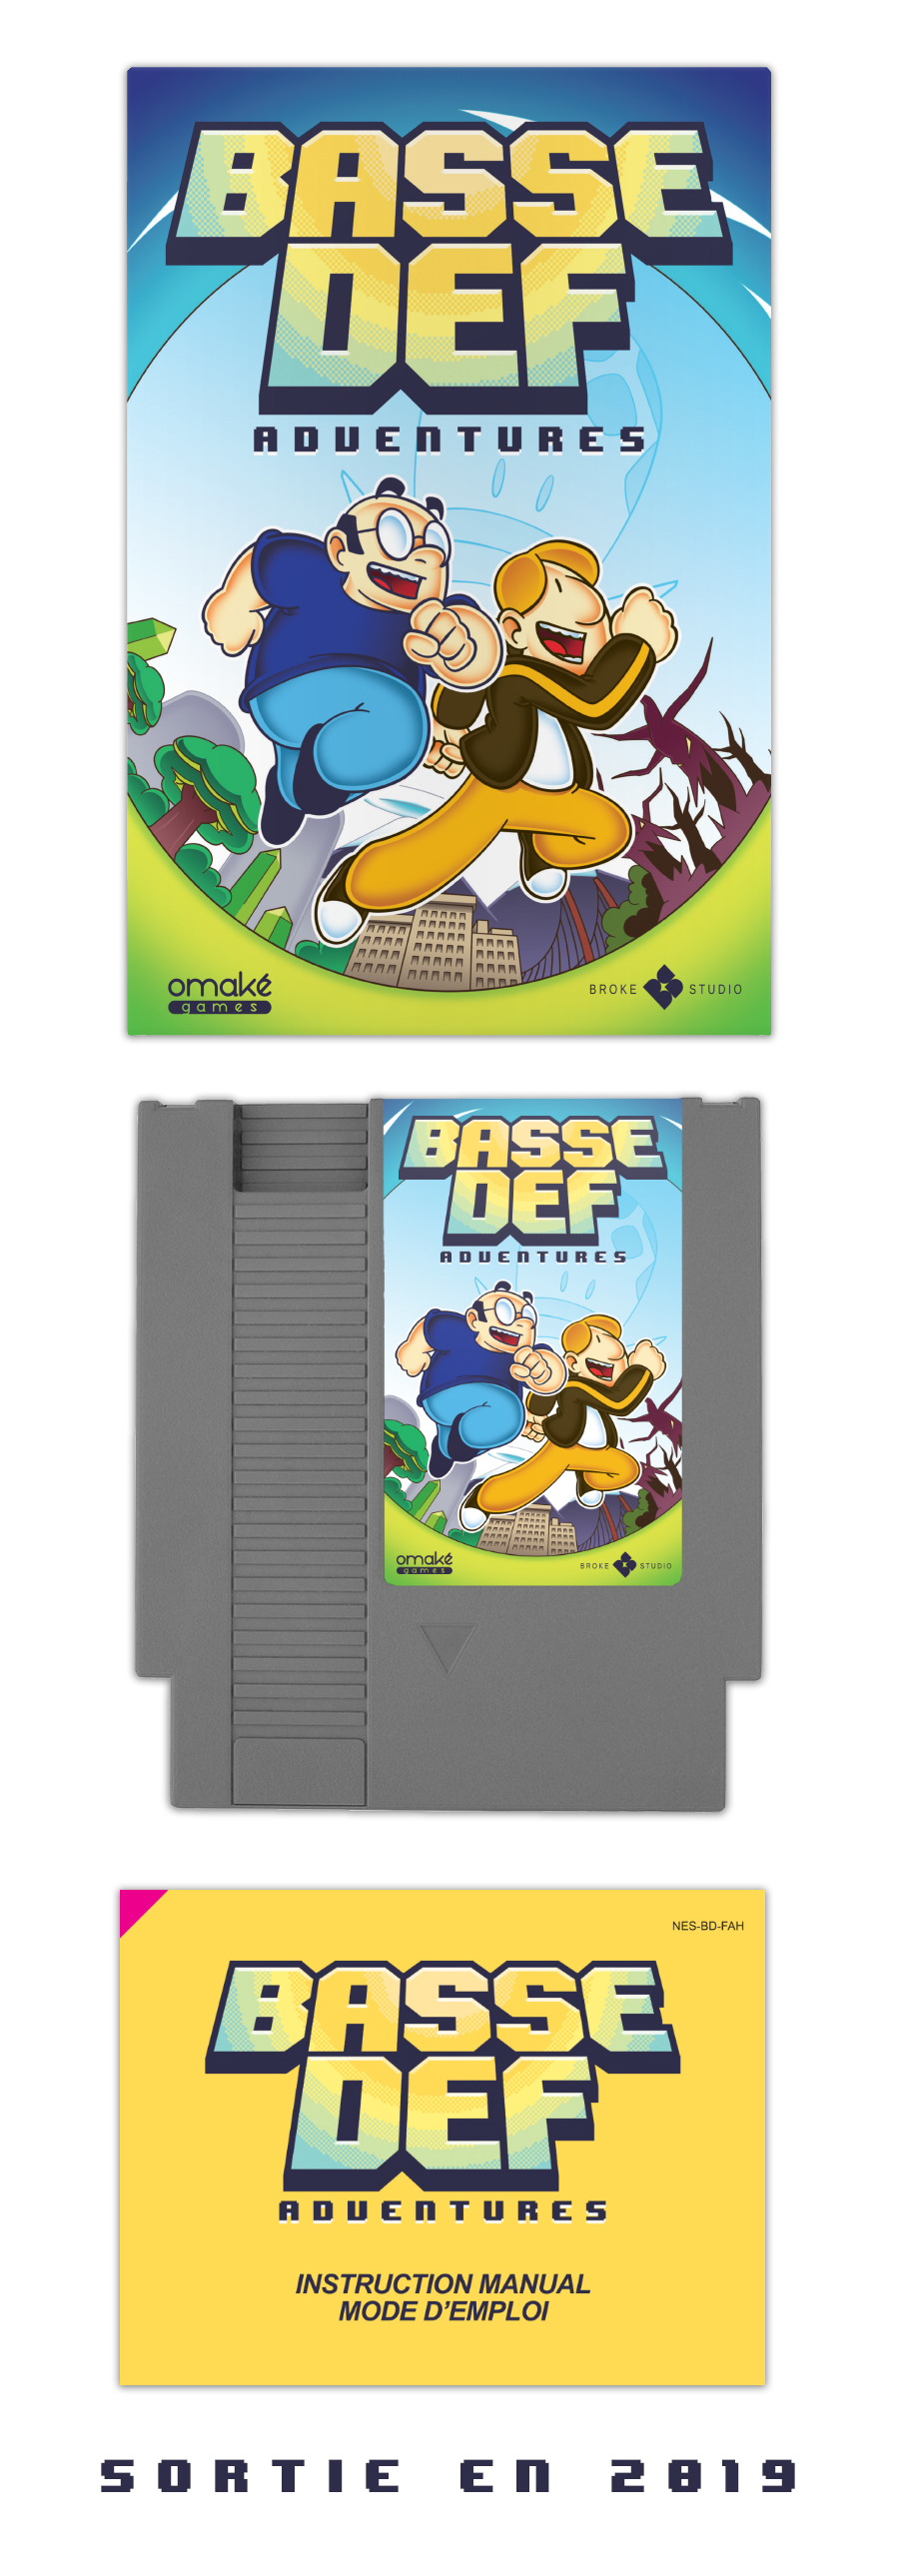 Basse Def Adventures, le jeu vidéo sur NES